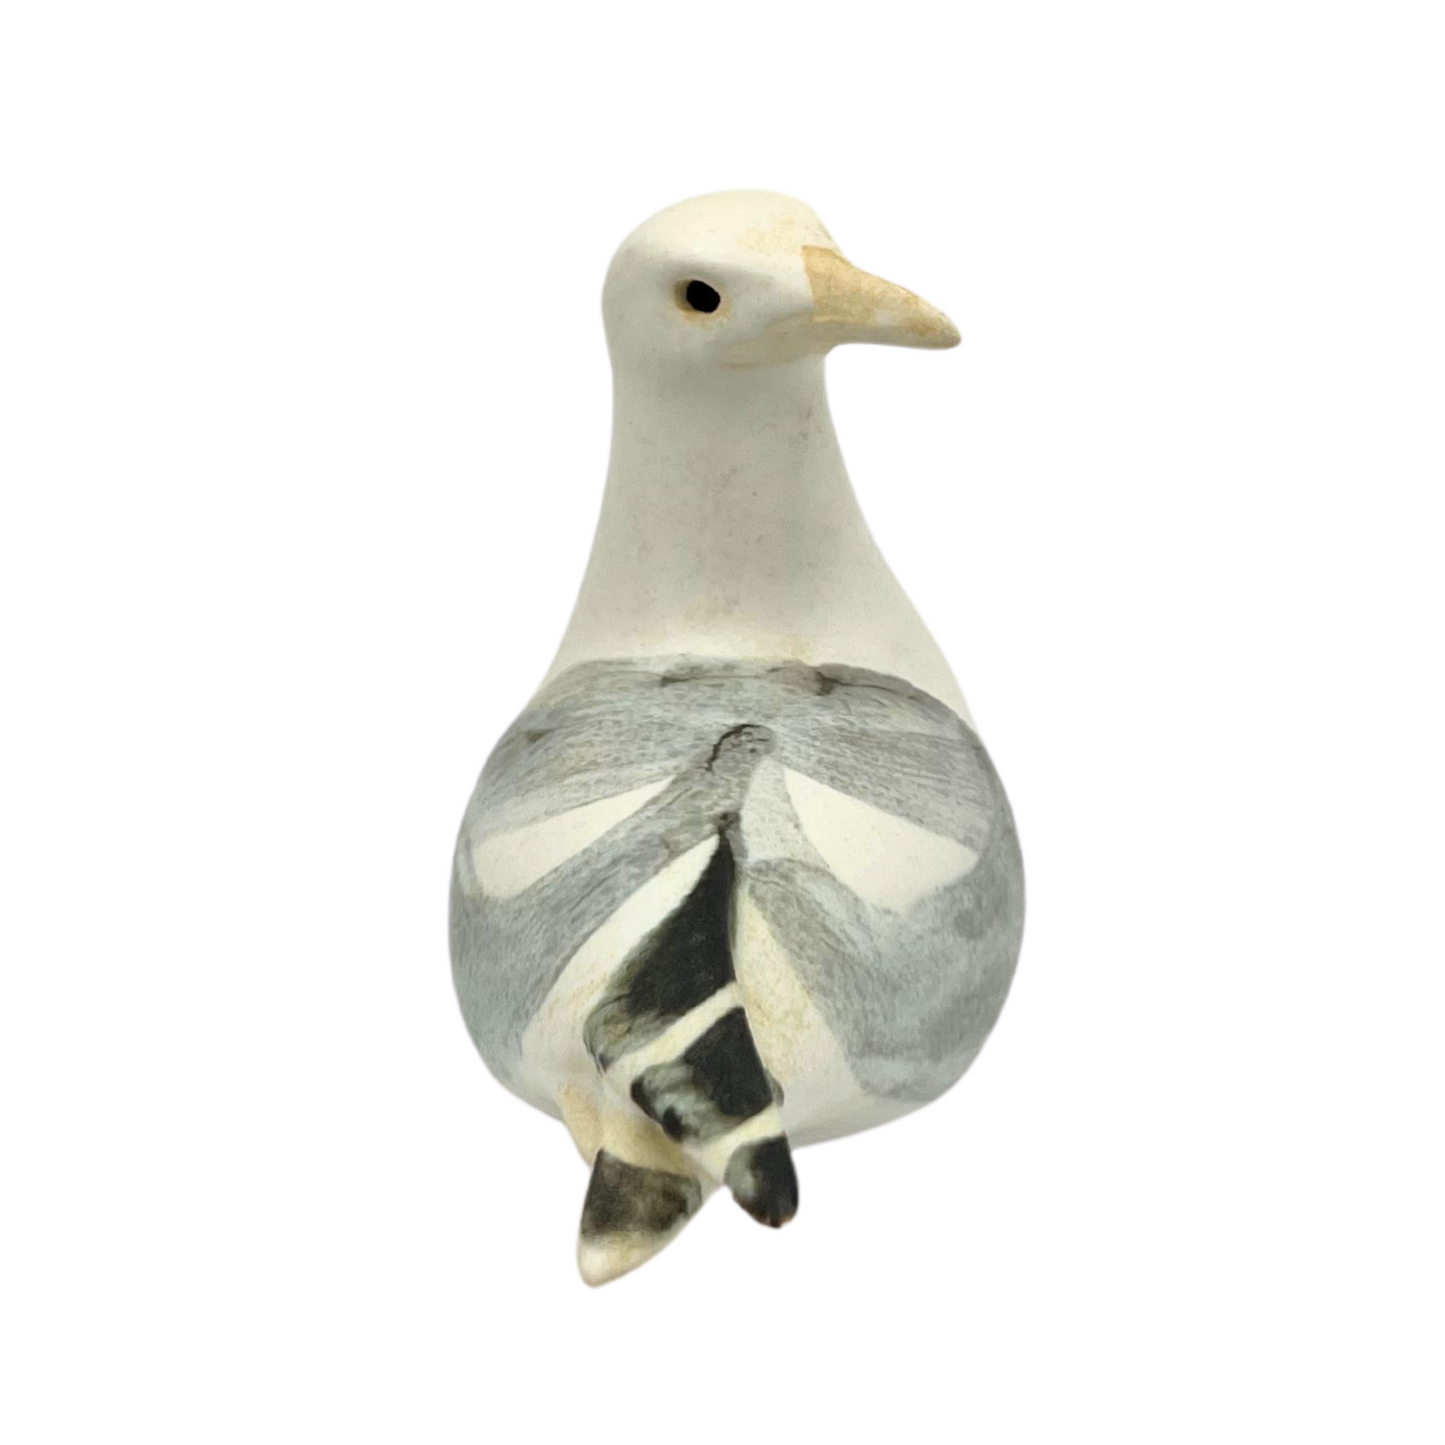 1982 ceramic seagull